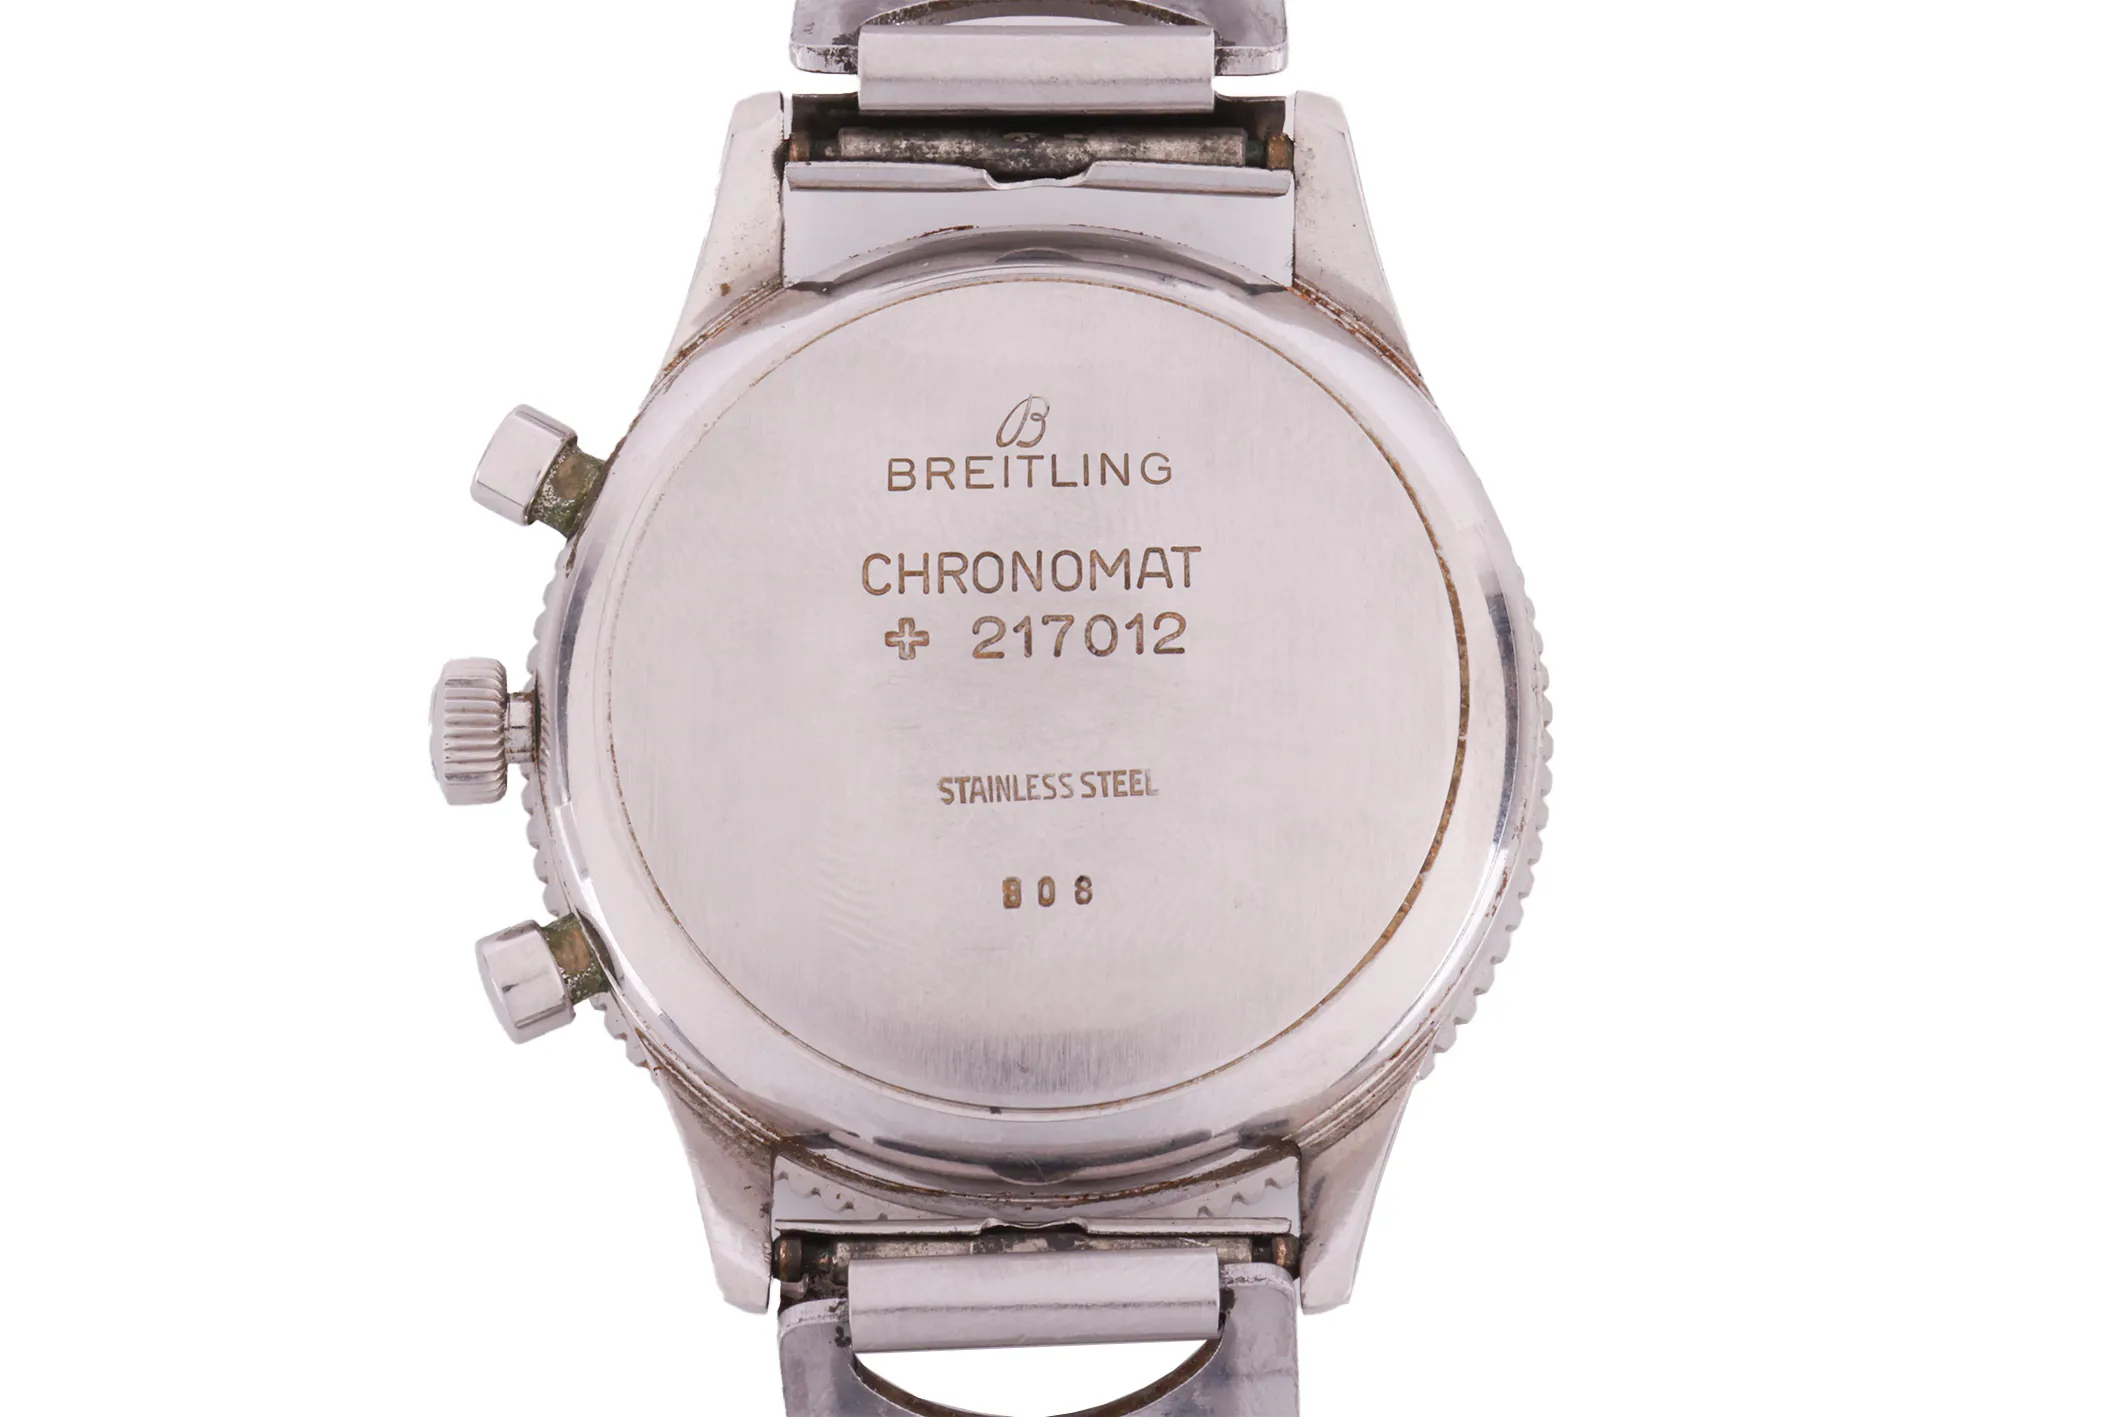 Breitling Chronomat 808/217012 37.5mm Stainless steel Black 3